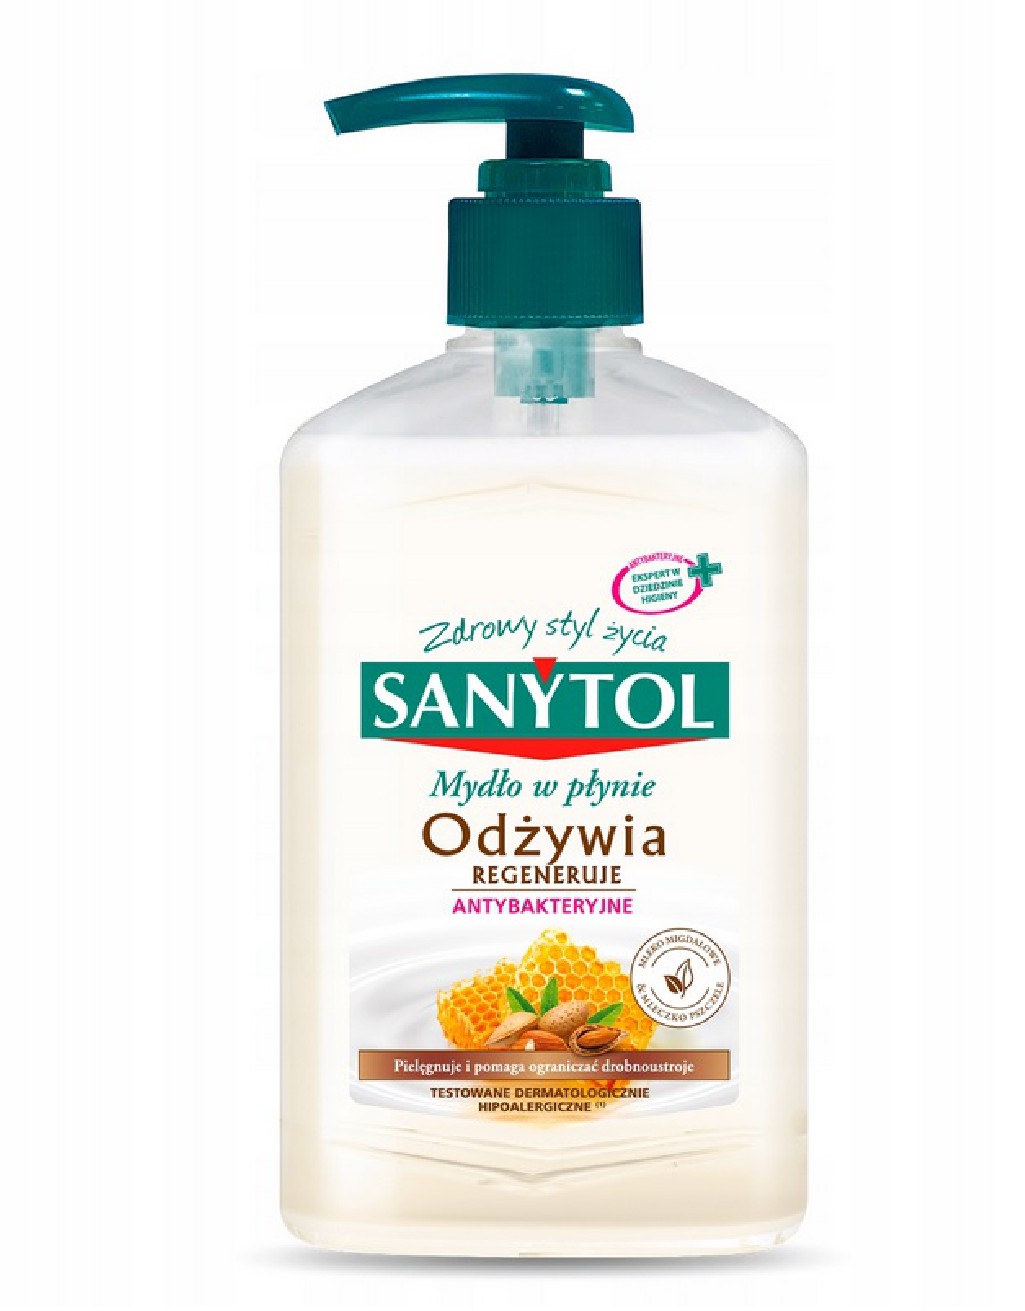 Antybakteryjne mydło w płynie Sanytol 250 ml o zapachu mleczka migdałowego i pszczelego